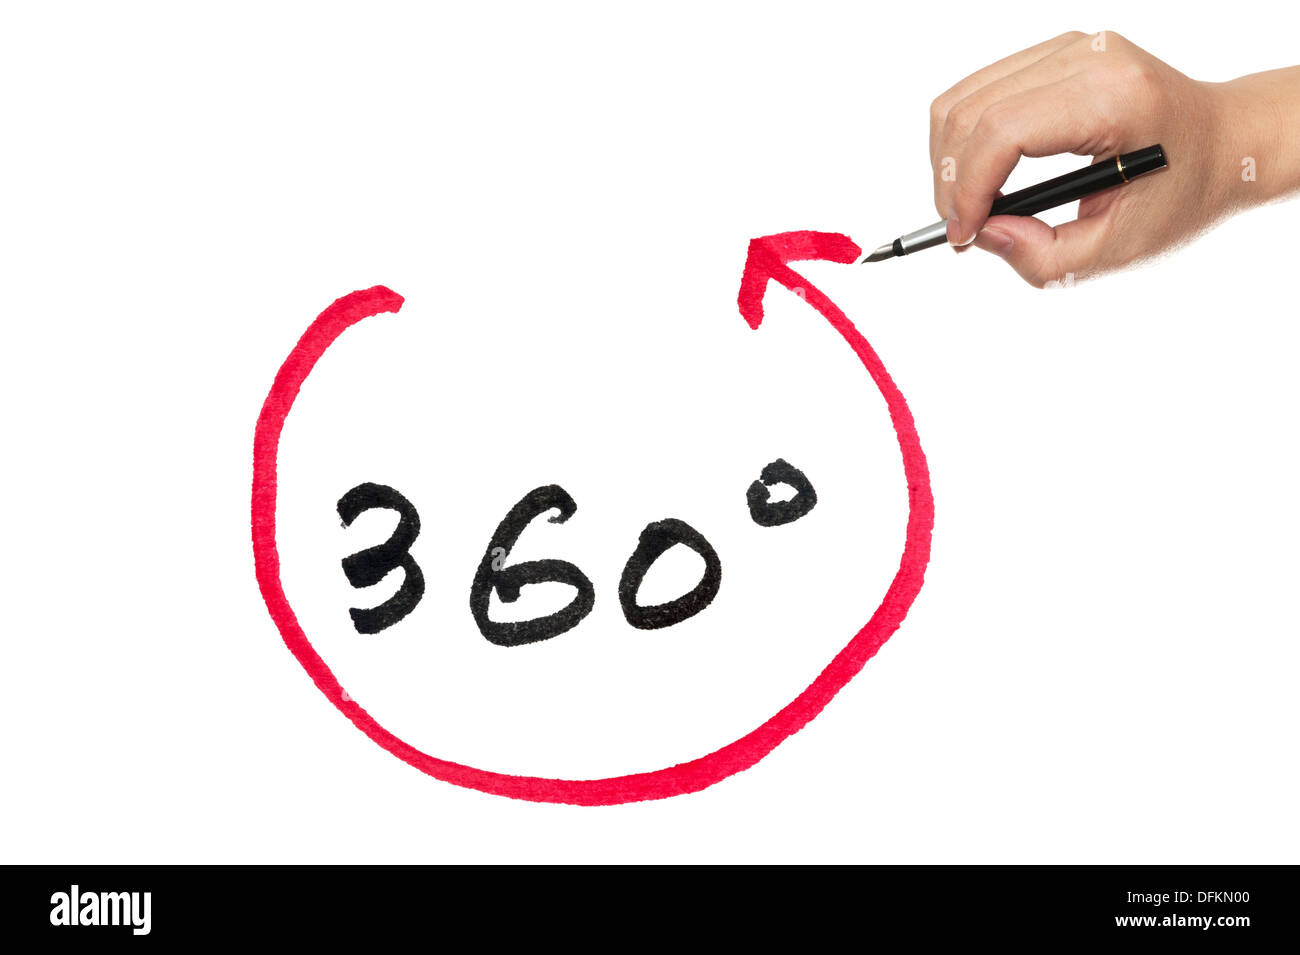 360 degree diagram drawn on white board Stock Photo